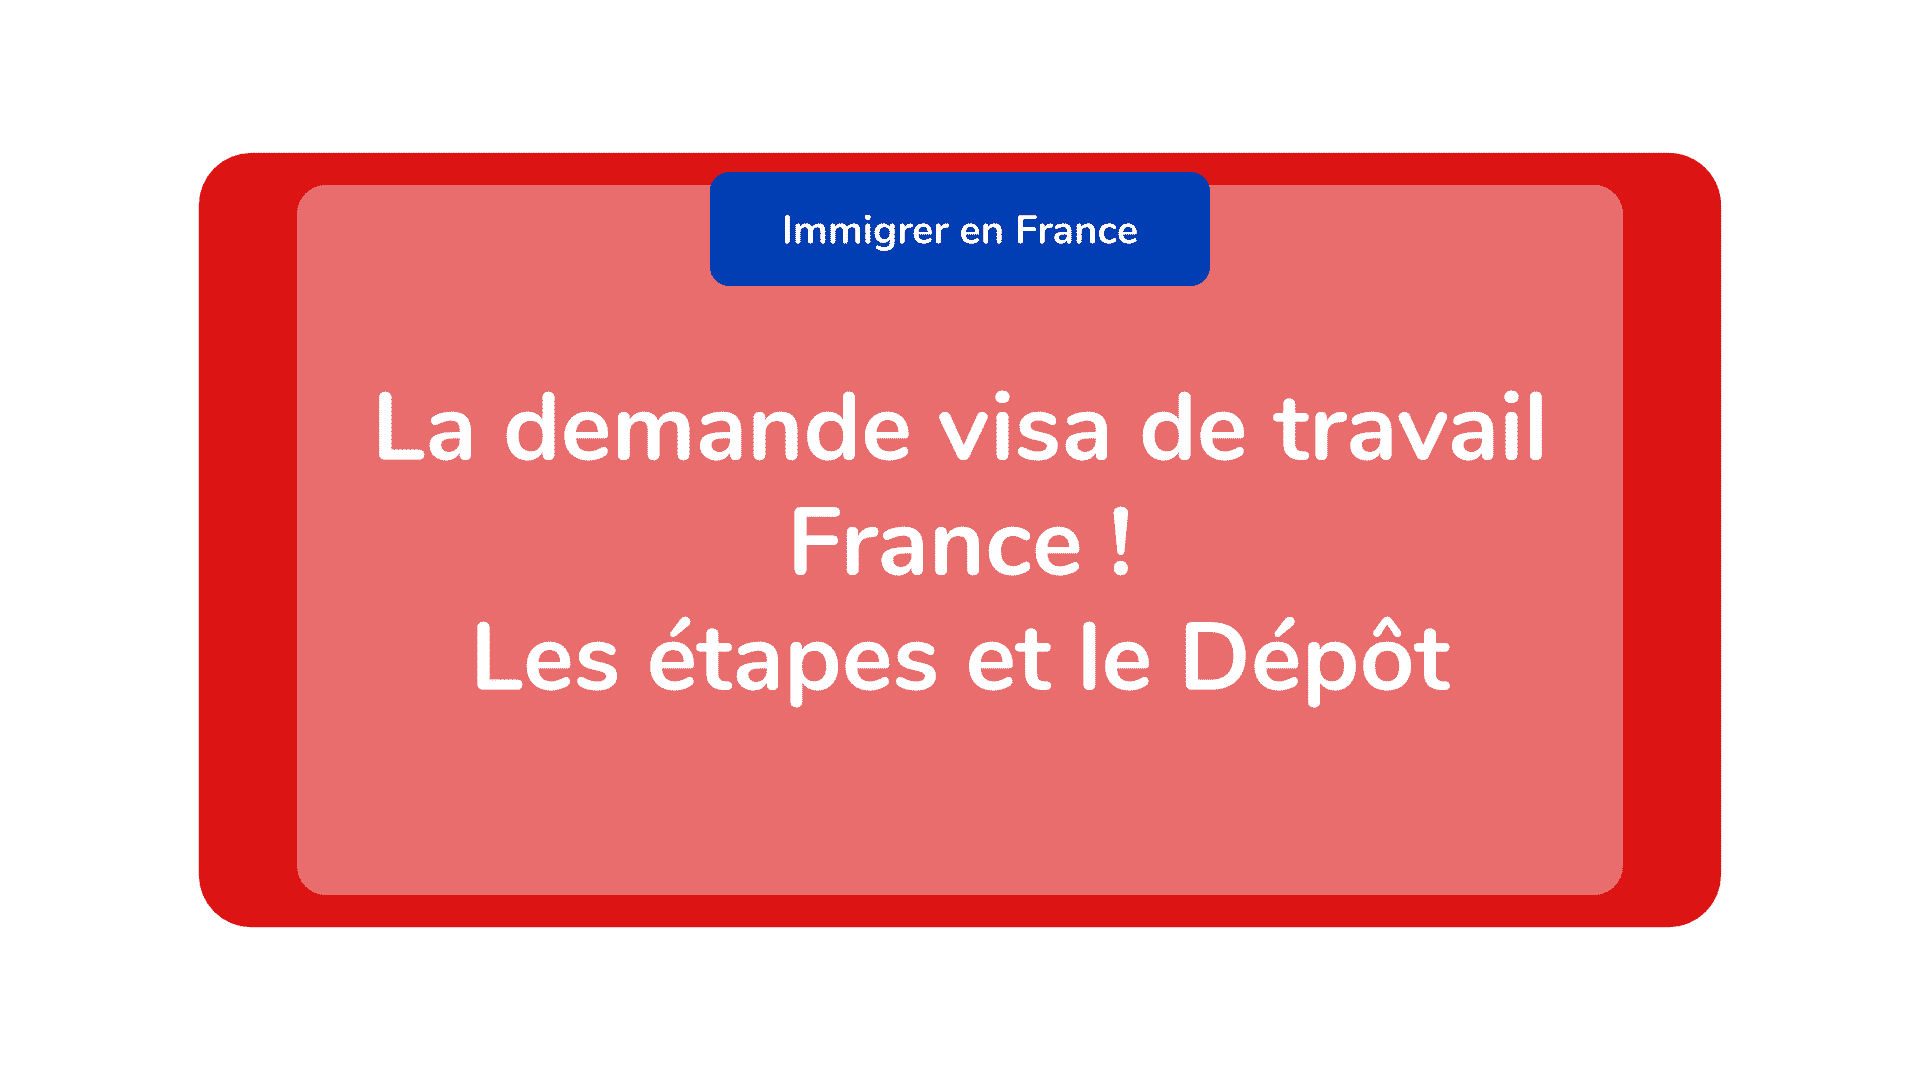 La demande visa de travail France ! Les étapes et le Dépôt